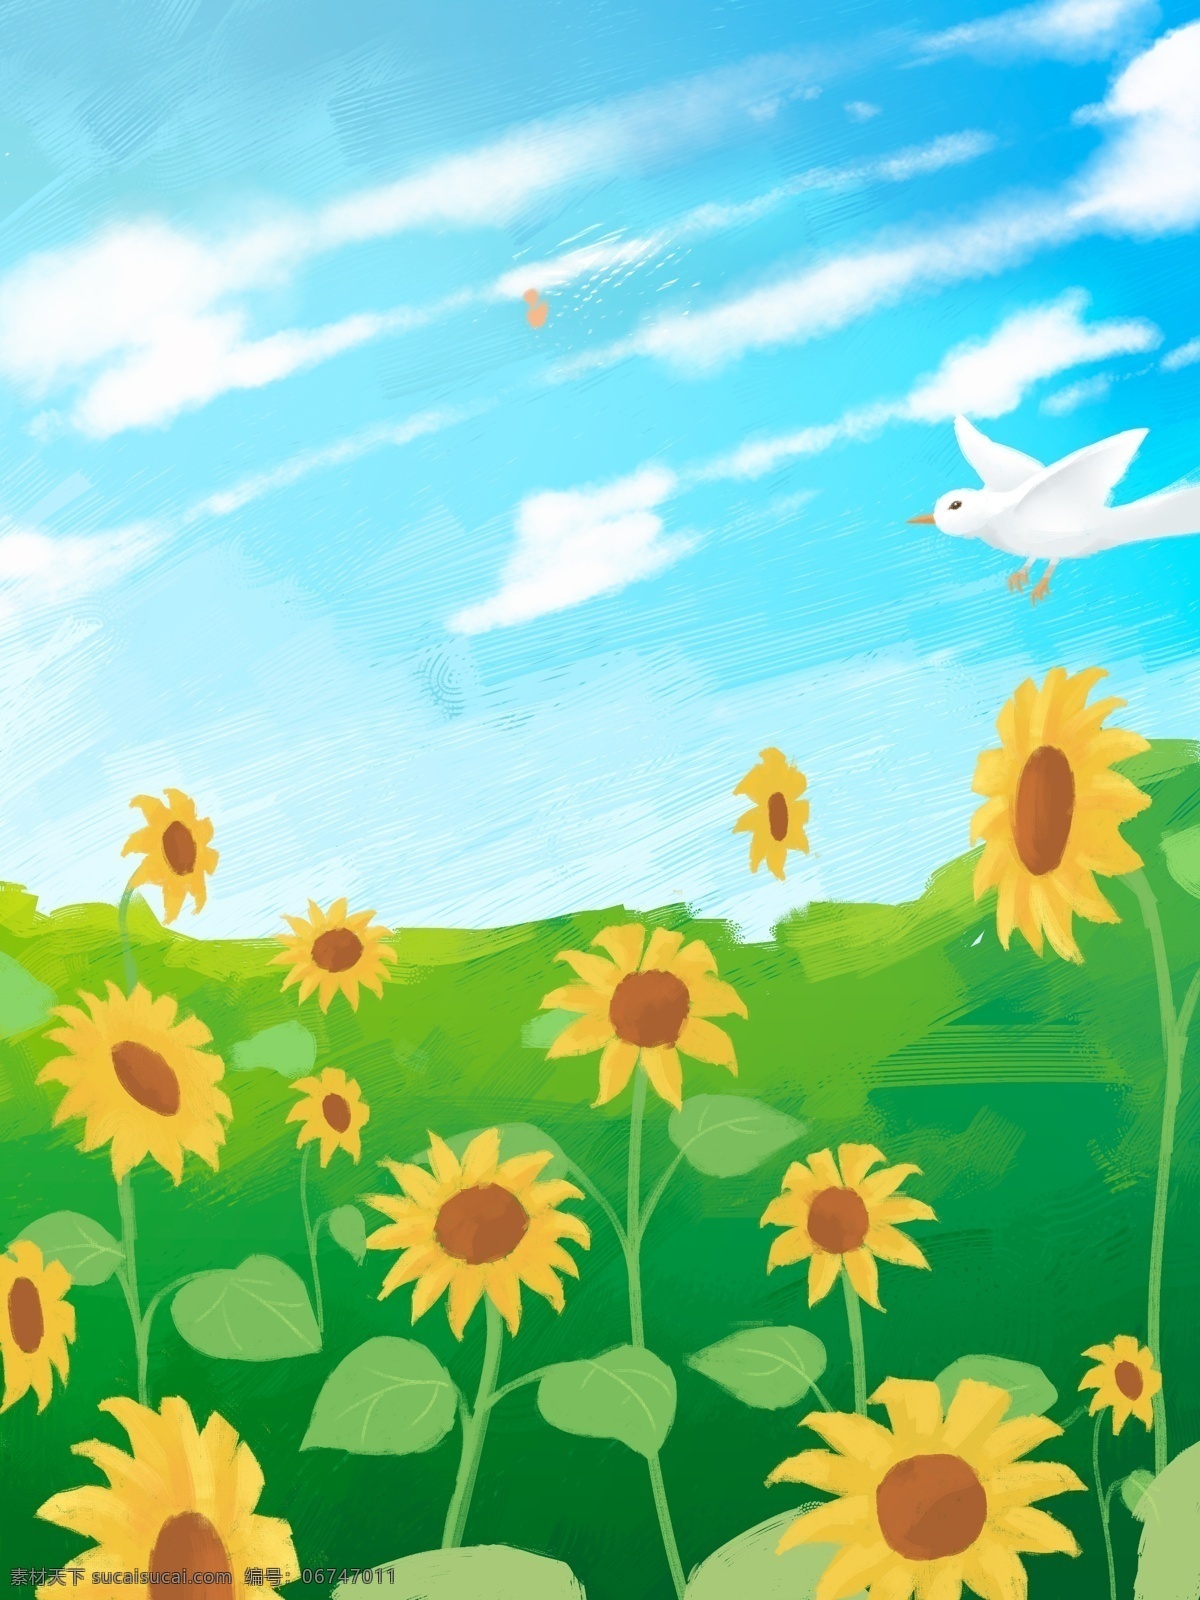 唯美 小 清晰 植物 花卉 背景 插画背景 植物背景 草地背景 绿地背景 蓝天白云 花卉背景